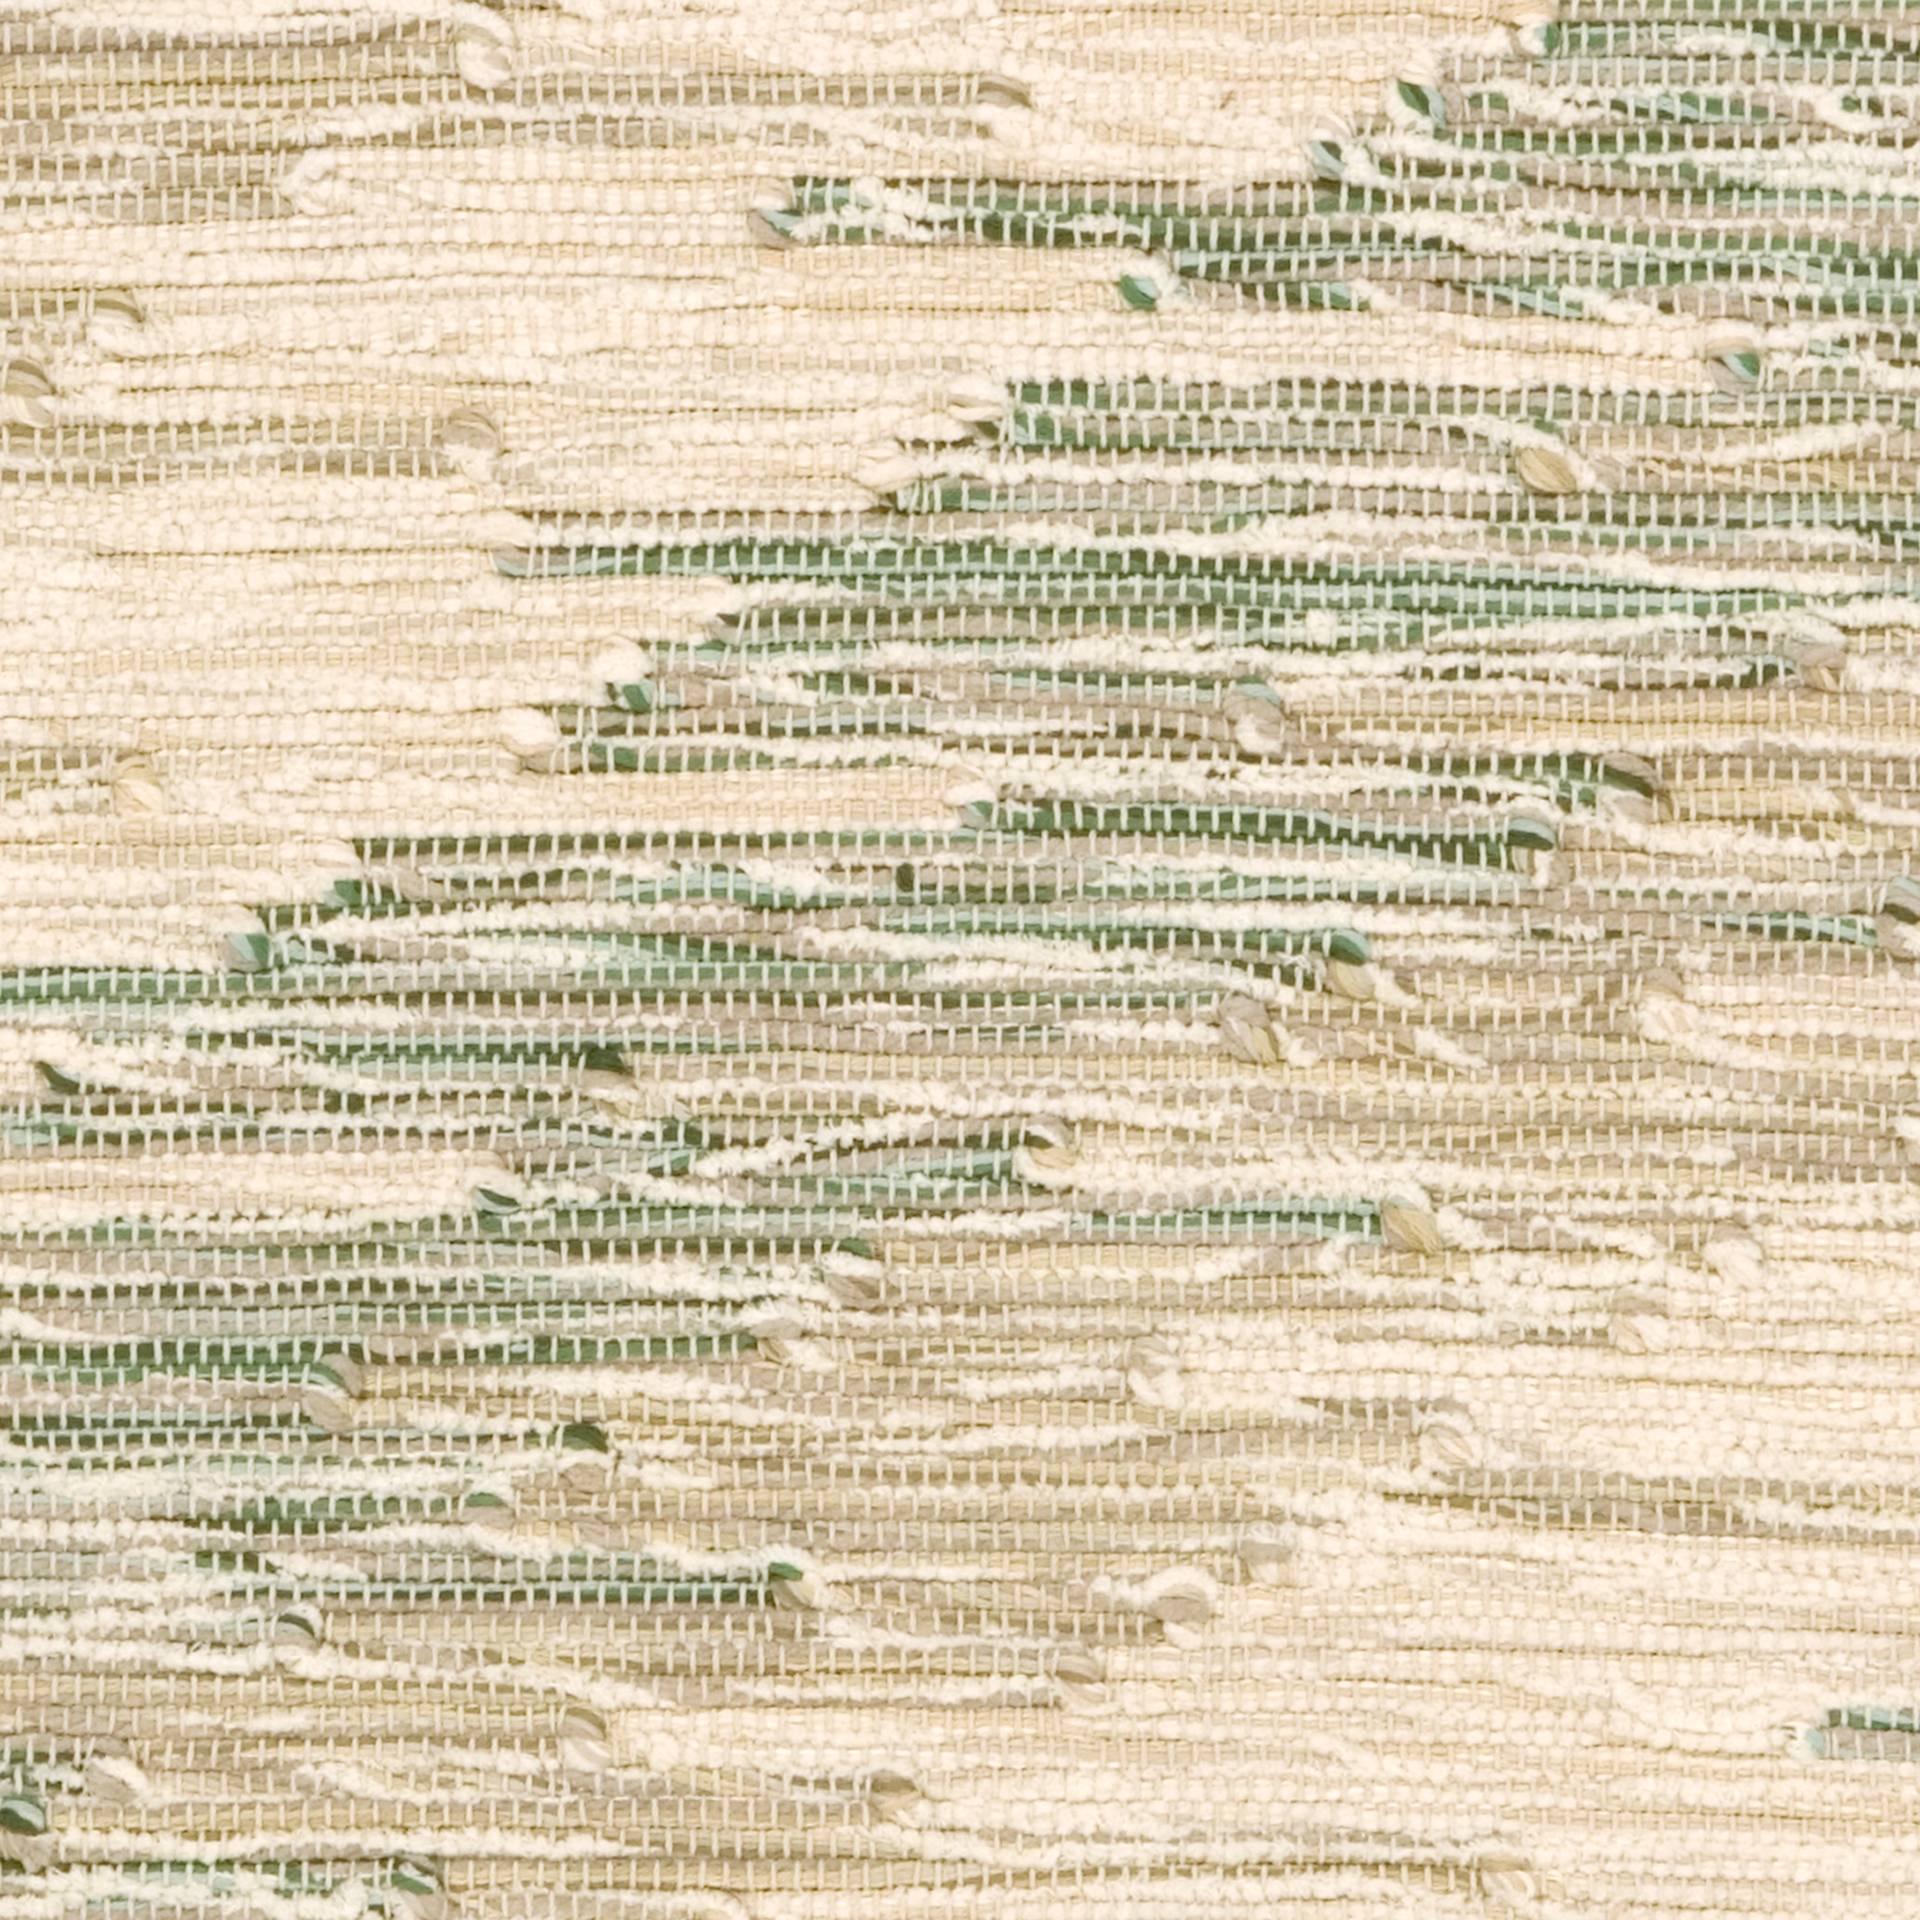 Hand-Woven Contemporary Italian 'Intreccio Diagonale' Carpet, Beige and Green